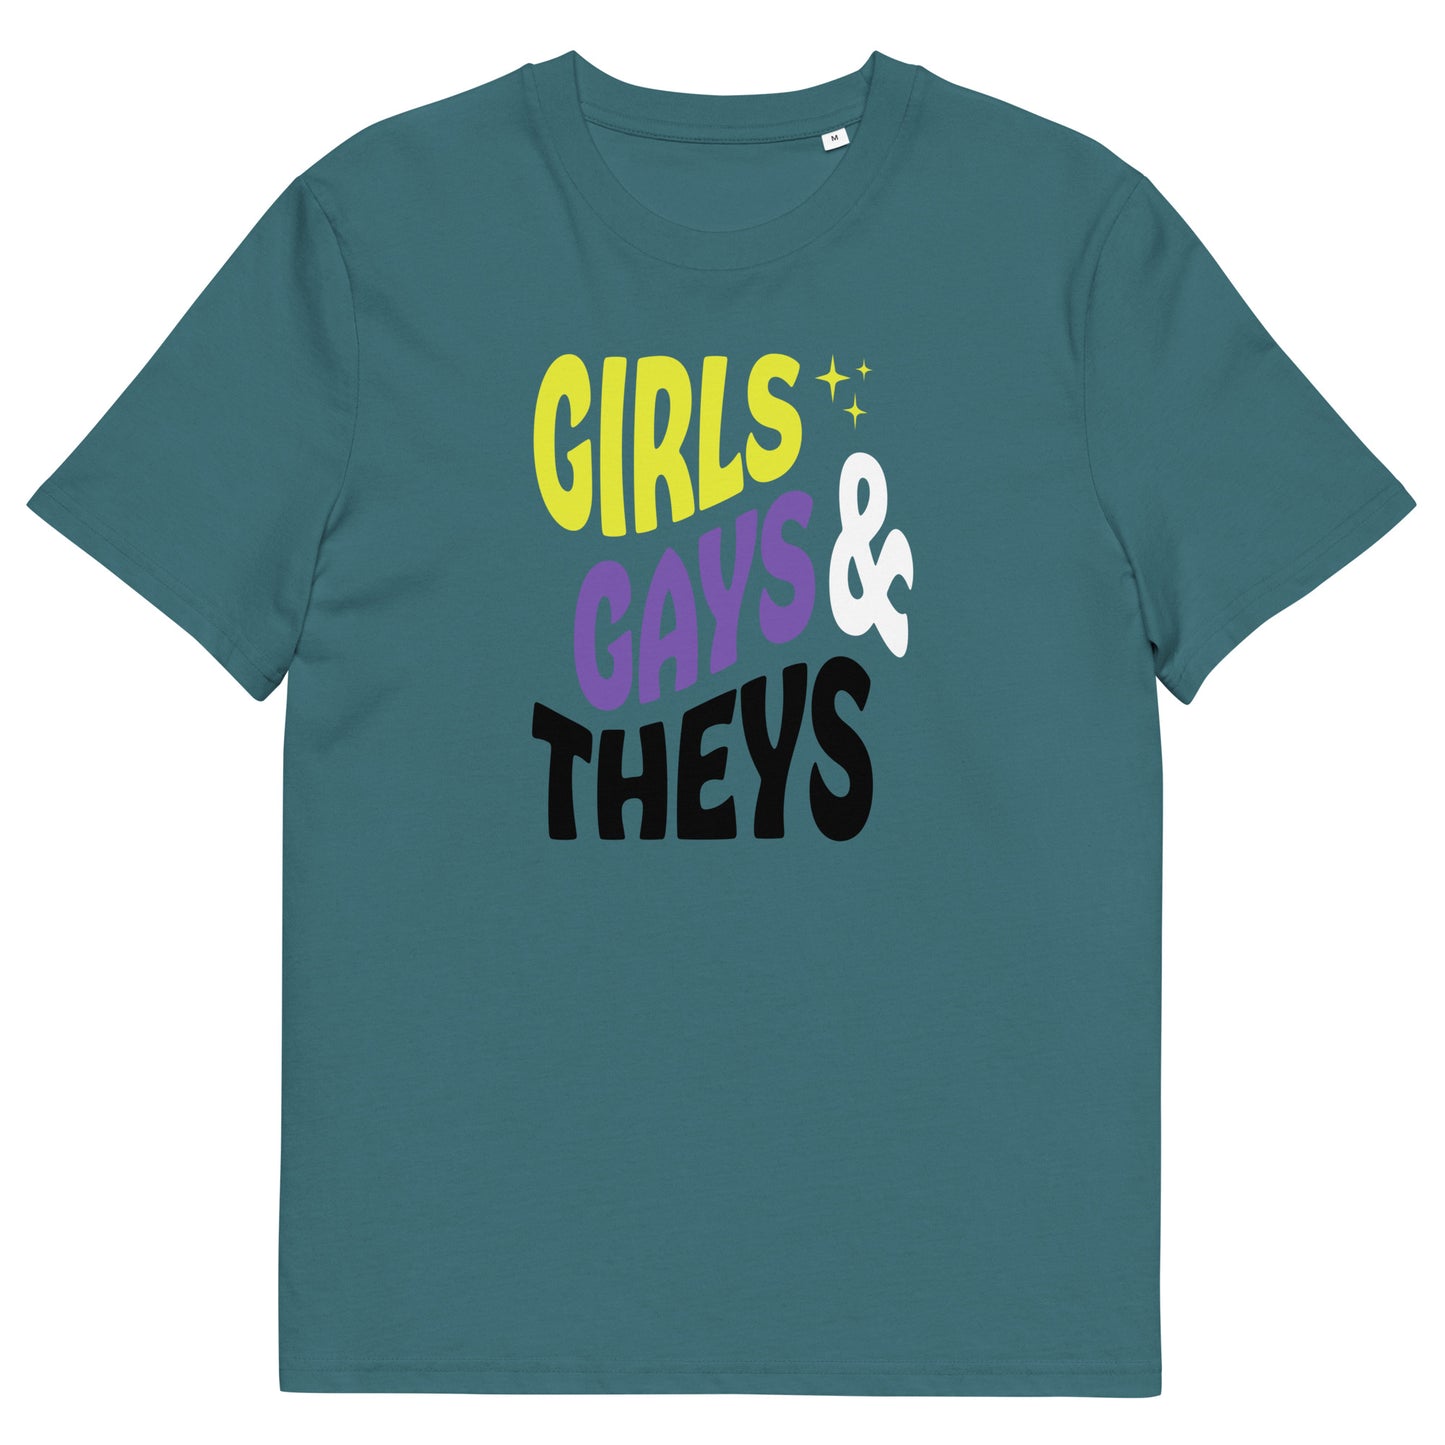 Organic Cotton T-shirt Print: Girls Gays & Theys (Non-Binary)